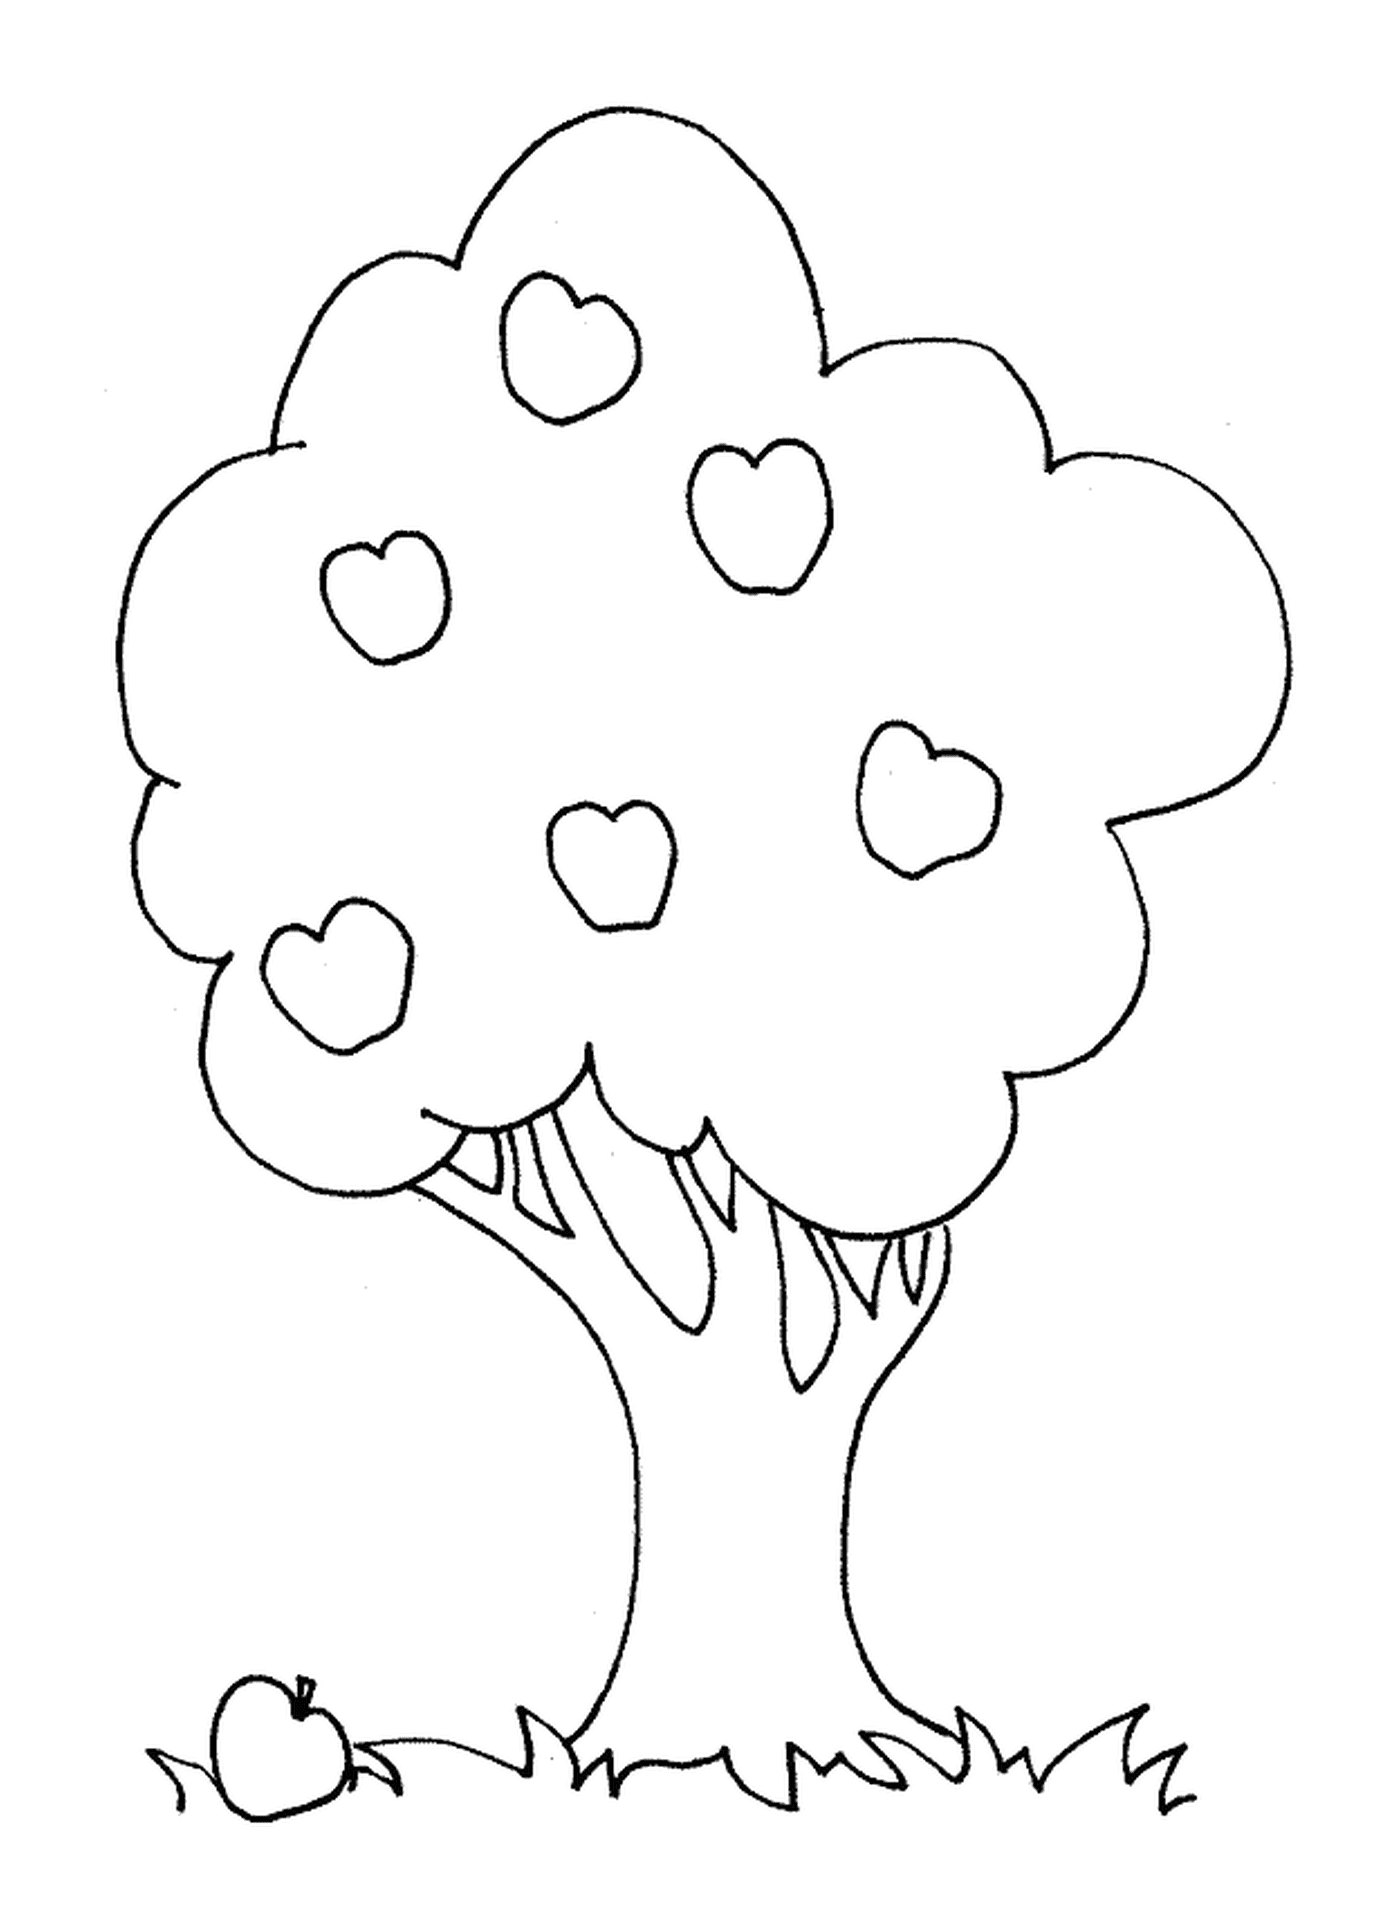  Дерево с сердцами 